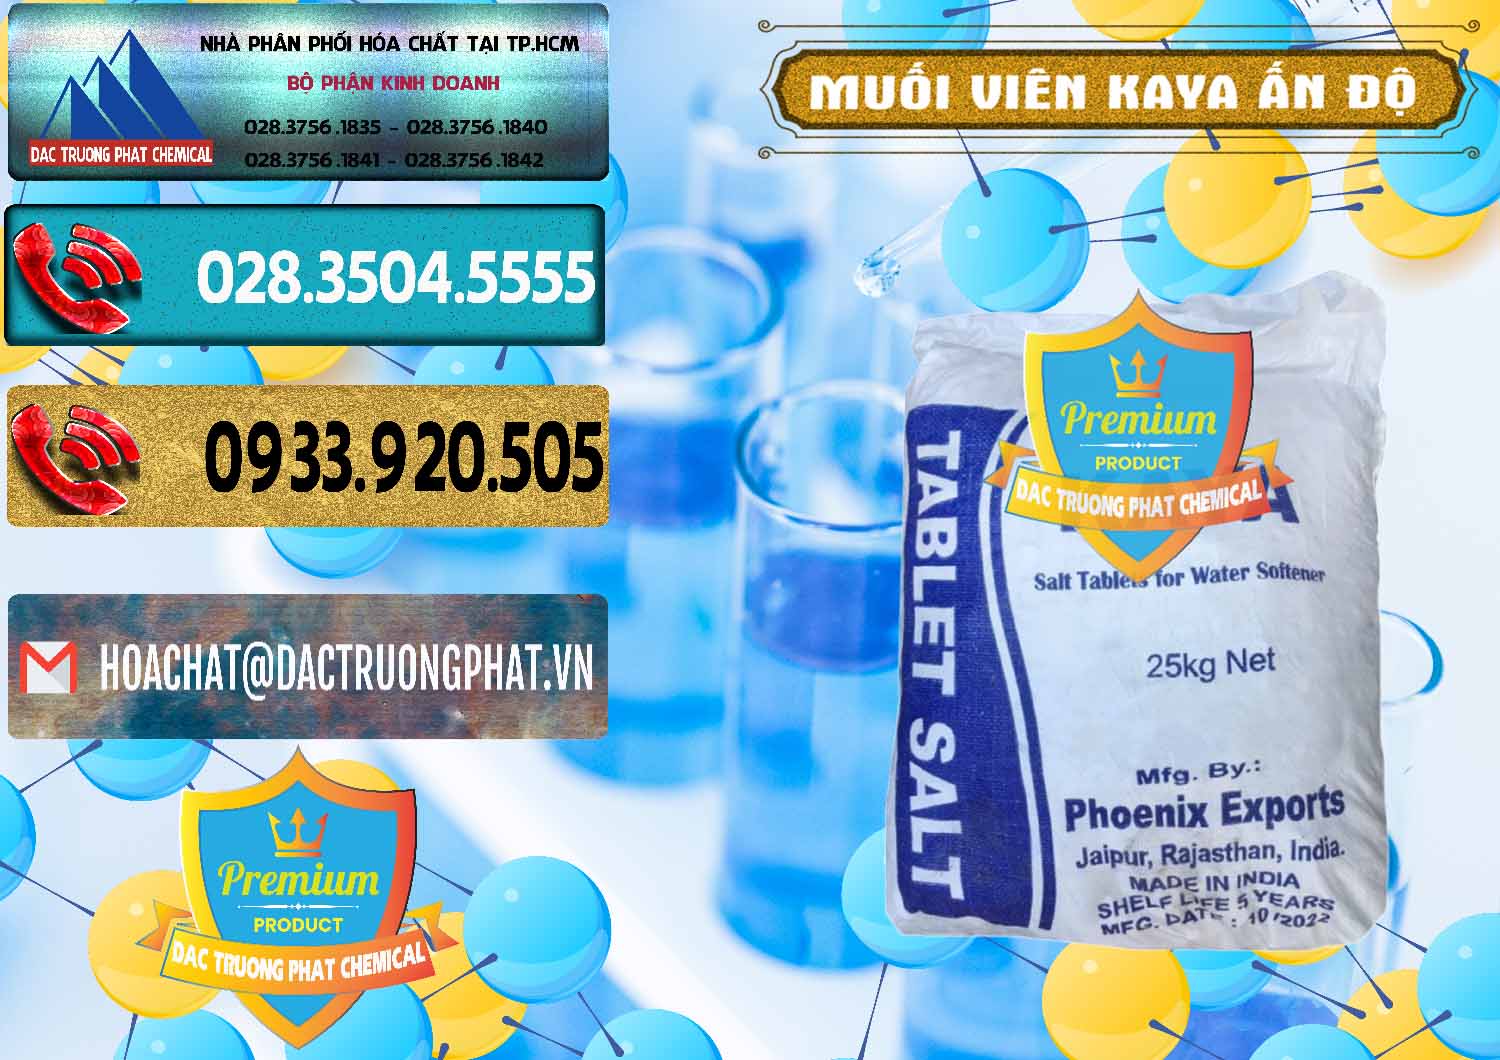 Đơn vị bán & cung cấp Muối NaCL – Sodium Chloride Dạng Viên Tablets Kaya Ấn Độ India - 0368 - Nơi chuyên phân phối _ nhập khẩu hóa chất tại TP.HCM - hoachatdetnhuom.com